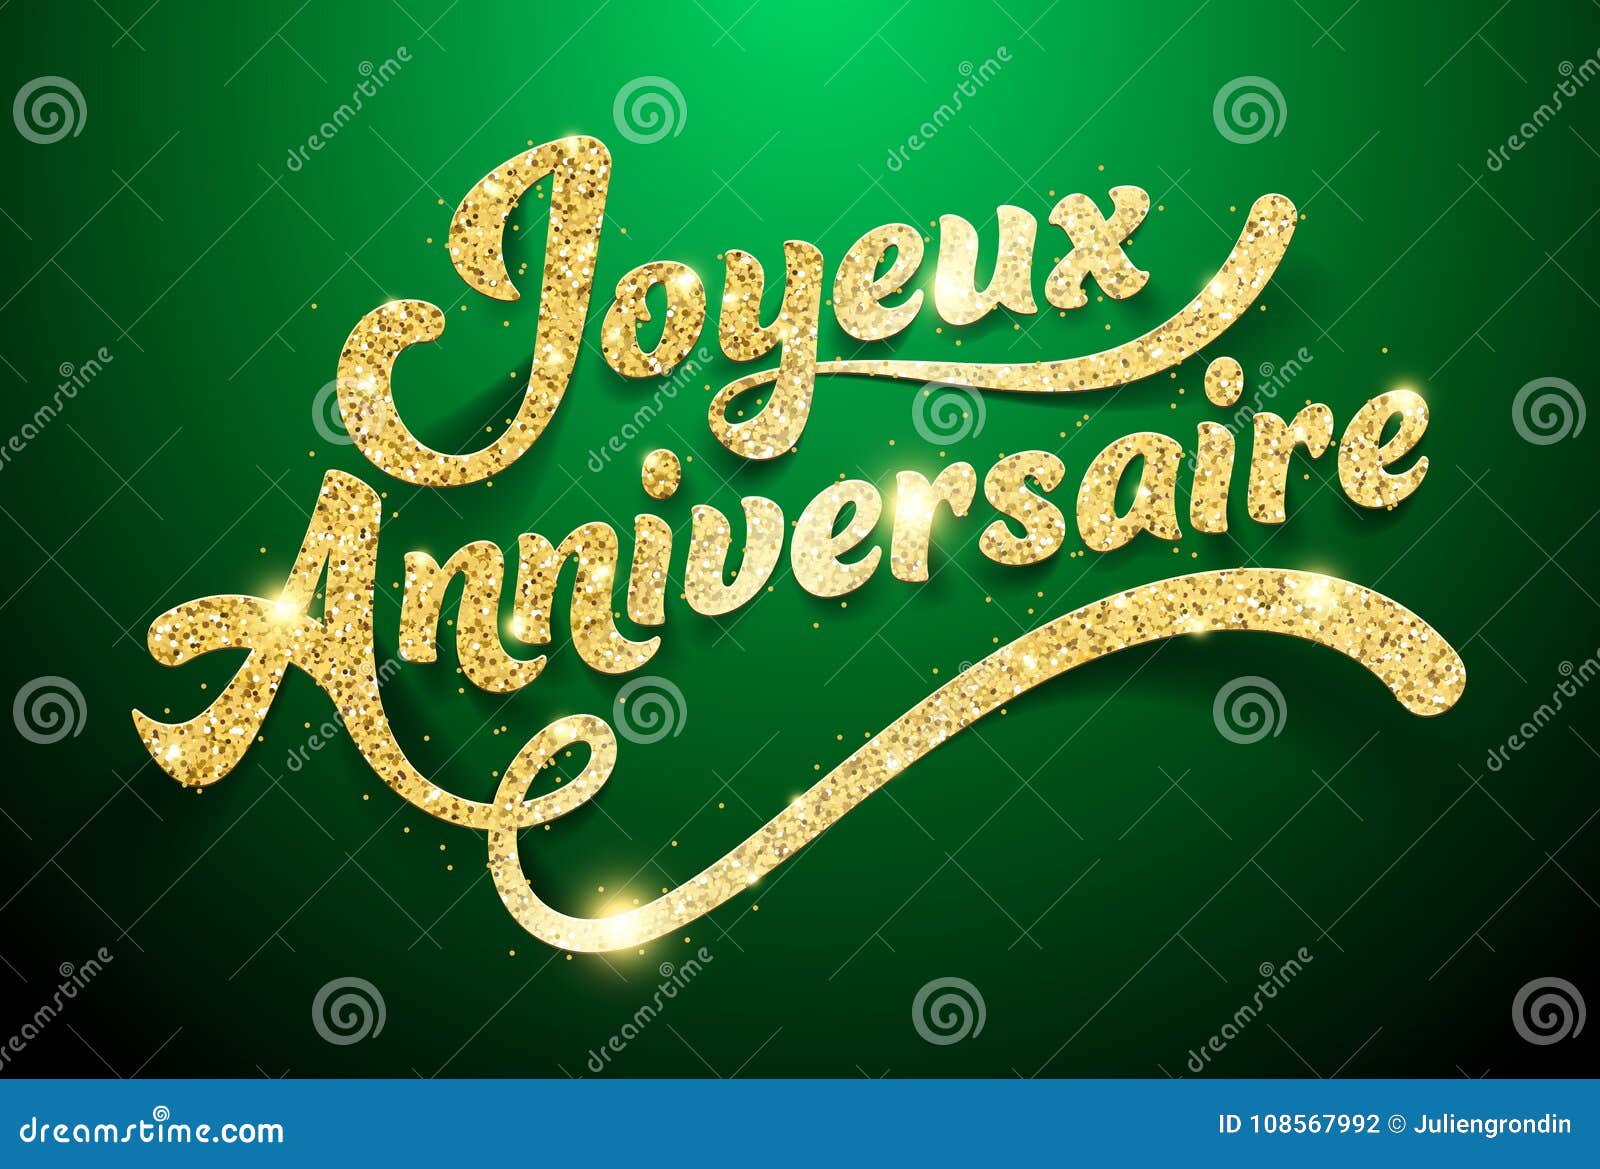 Joyeux Anniversaire Happy Birthday French Stock Illustrations 47 Joyeux Anniversaire Happy Birthday French Stock Illustrations Vectors Clipart Dreamstime